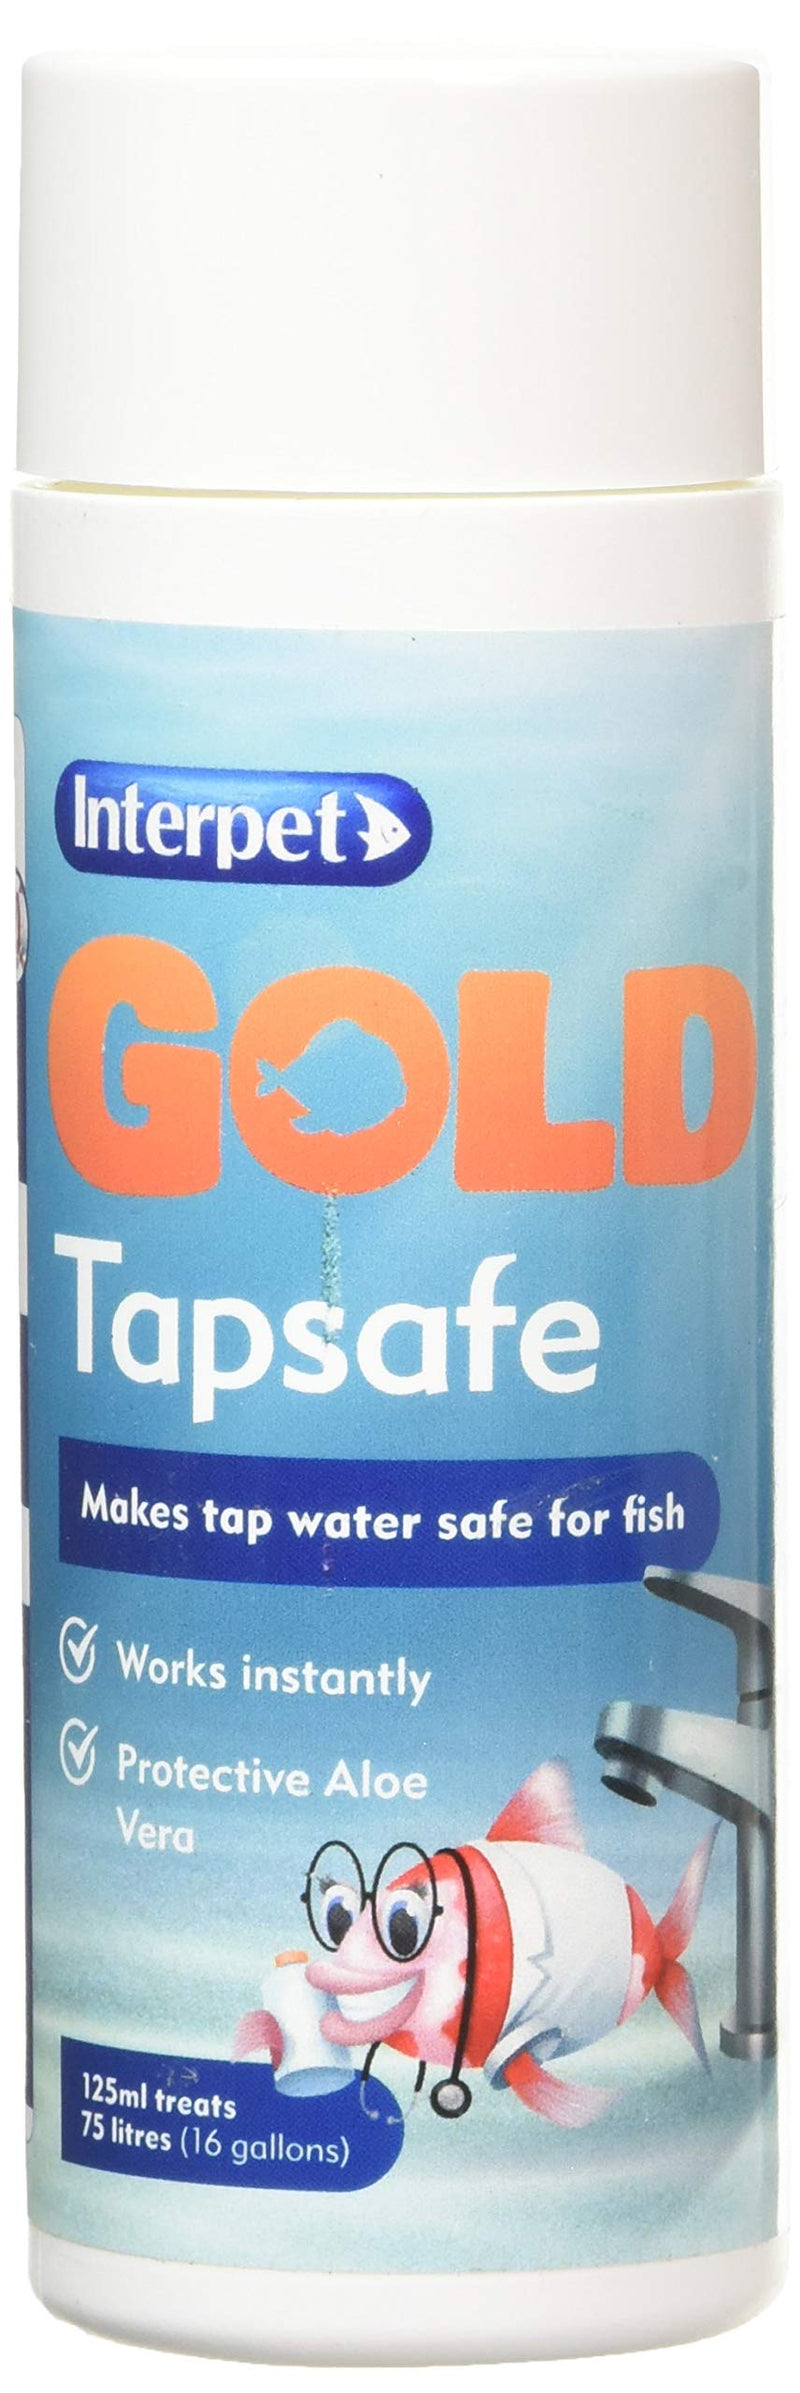 Interpet Gold Tapsafe for Goldfish Bowls, Fish Tanks, Aquariums, makes tapwater safe, 125ml 1 - PawsPlanet Australia